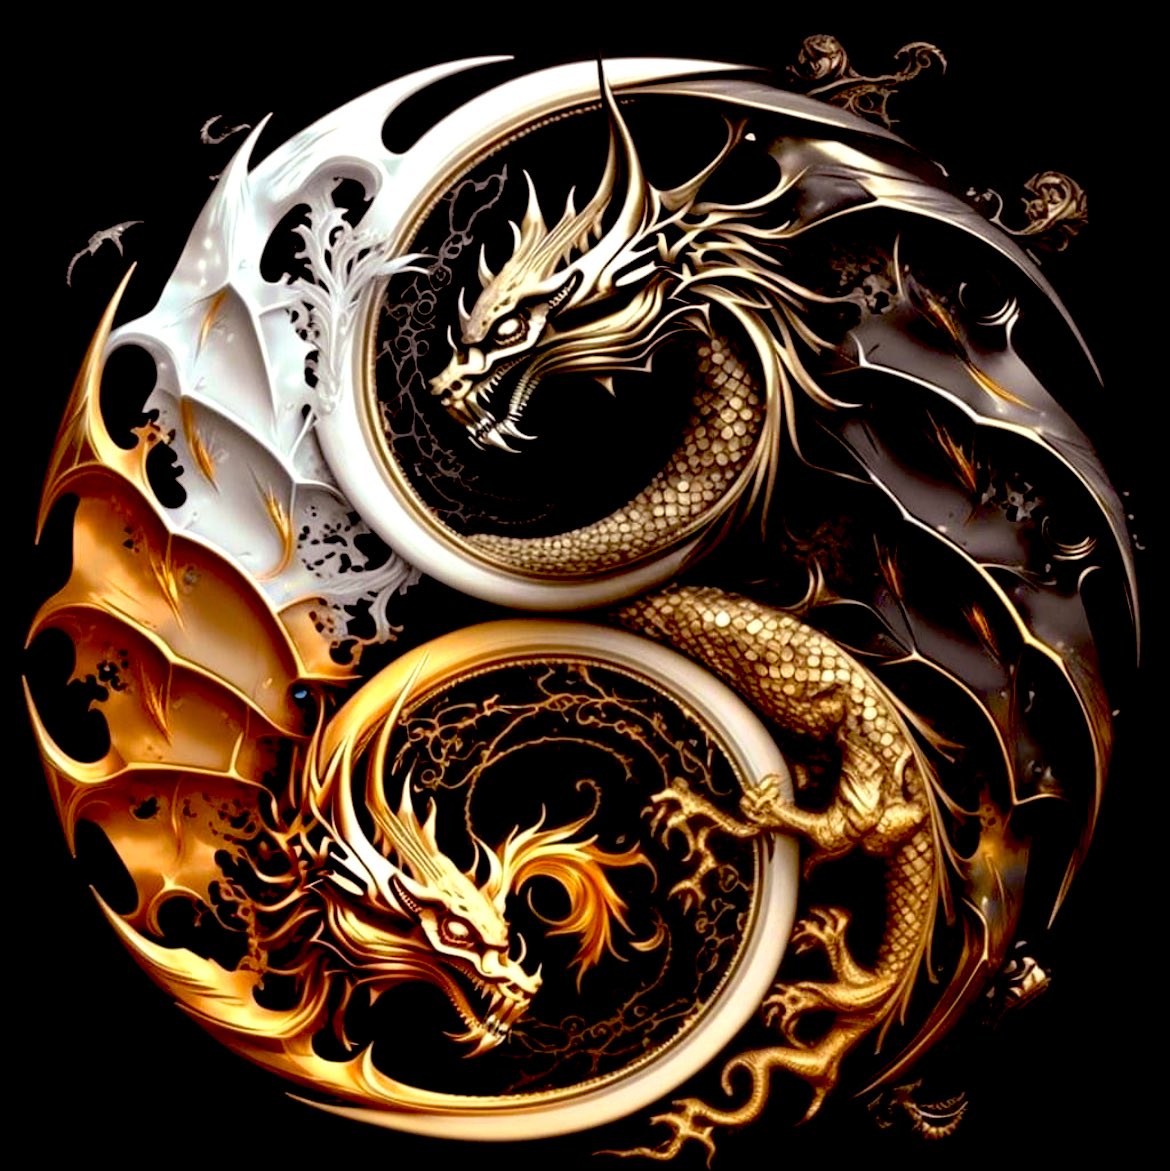 🌓 Descubre la dualidad complementaria del yin y el yang en la filosofía china. Yin representa lo femenino y pasivo, yang lo masculino y activo. Juntos, forman un equilibrio dinámico en constante cambio. 🔄 #FilosofíaChina #YinyYang